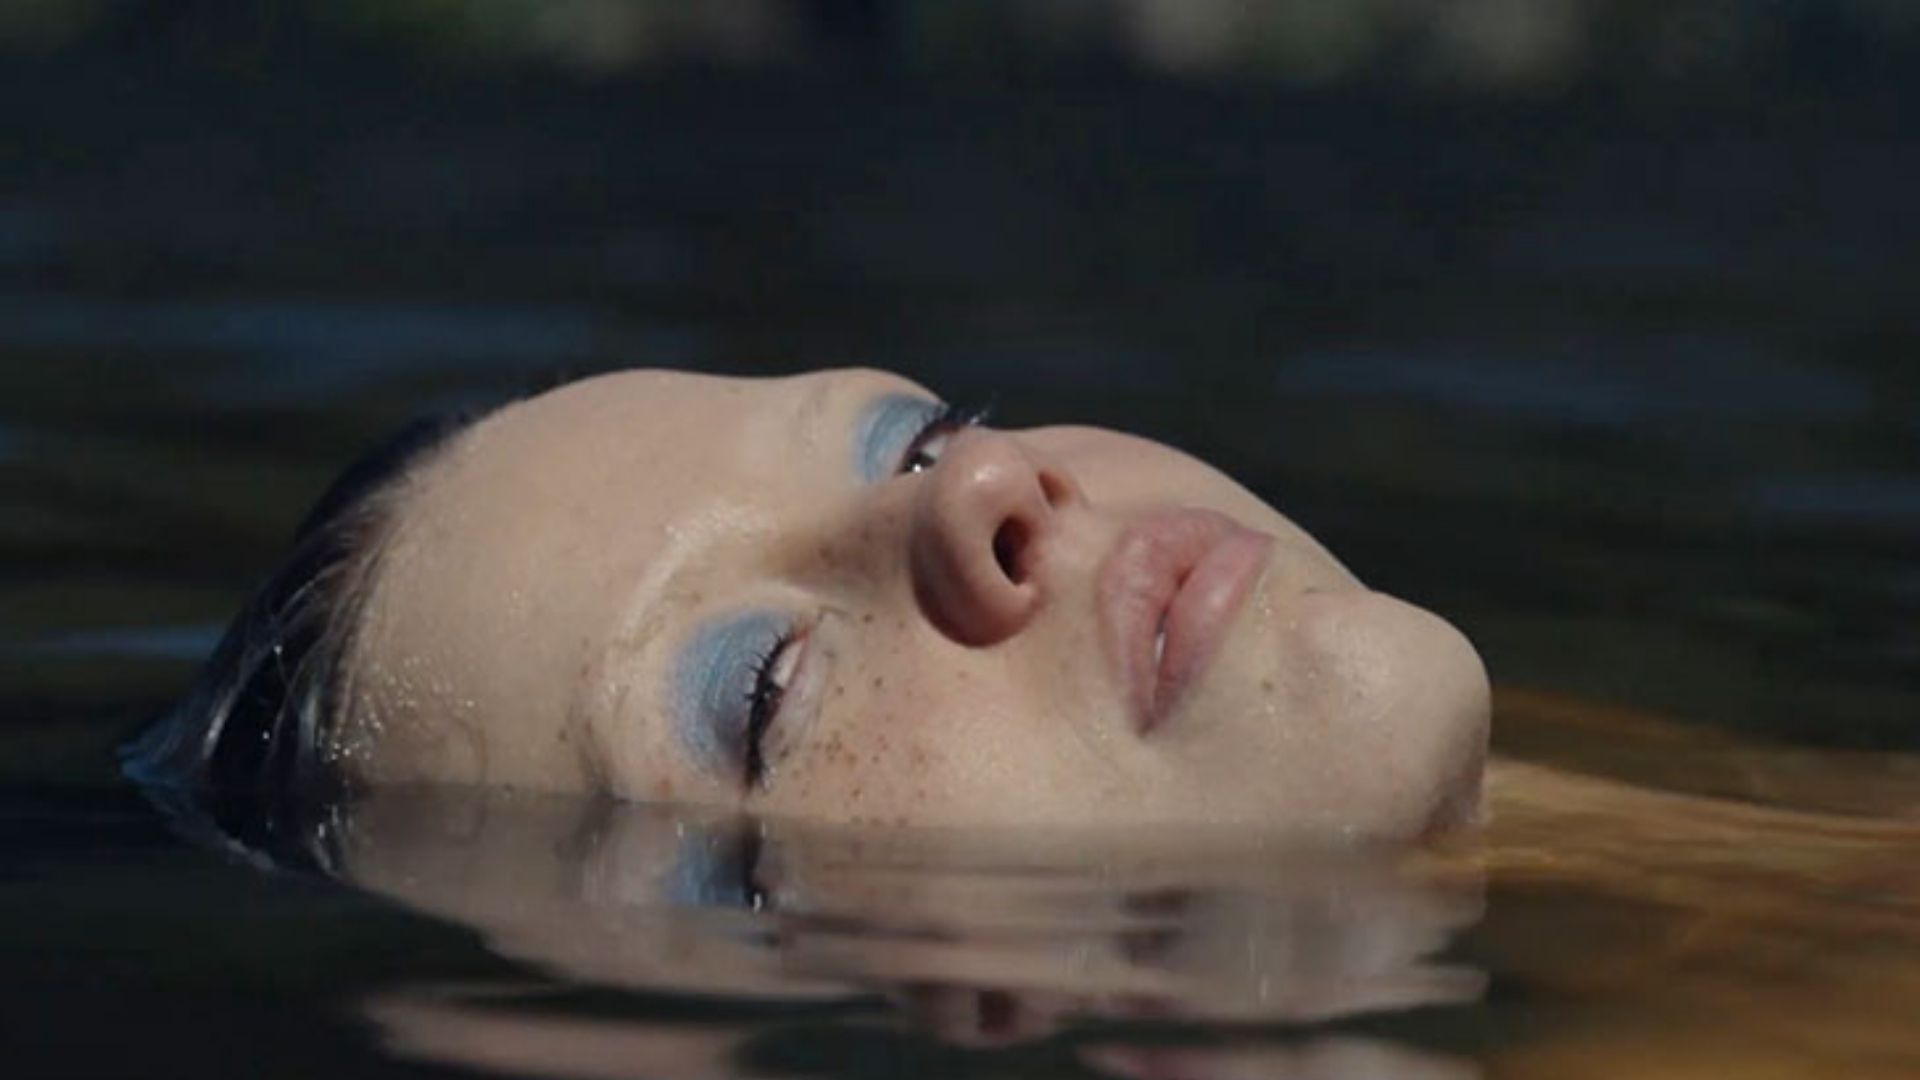 Cena do filme X, mostra uma mulher branca flutuando deitada num rio, com apenas a cabeça para fora da água.